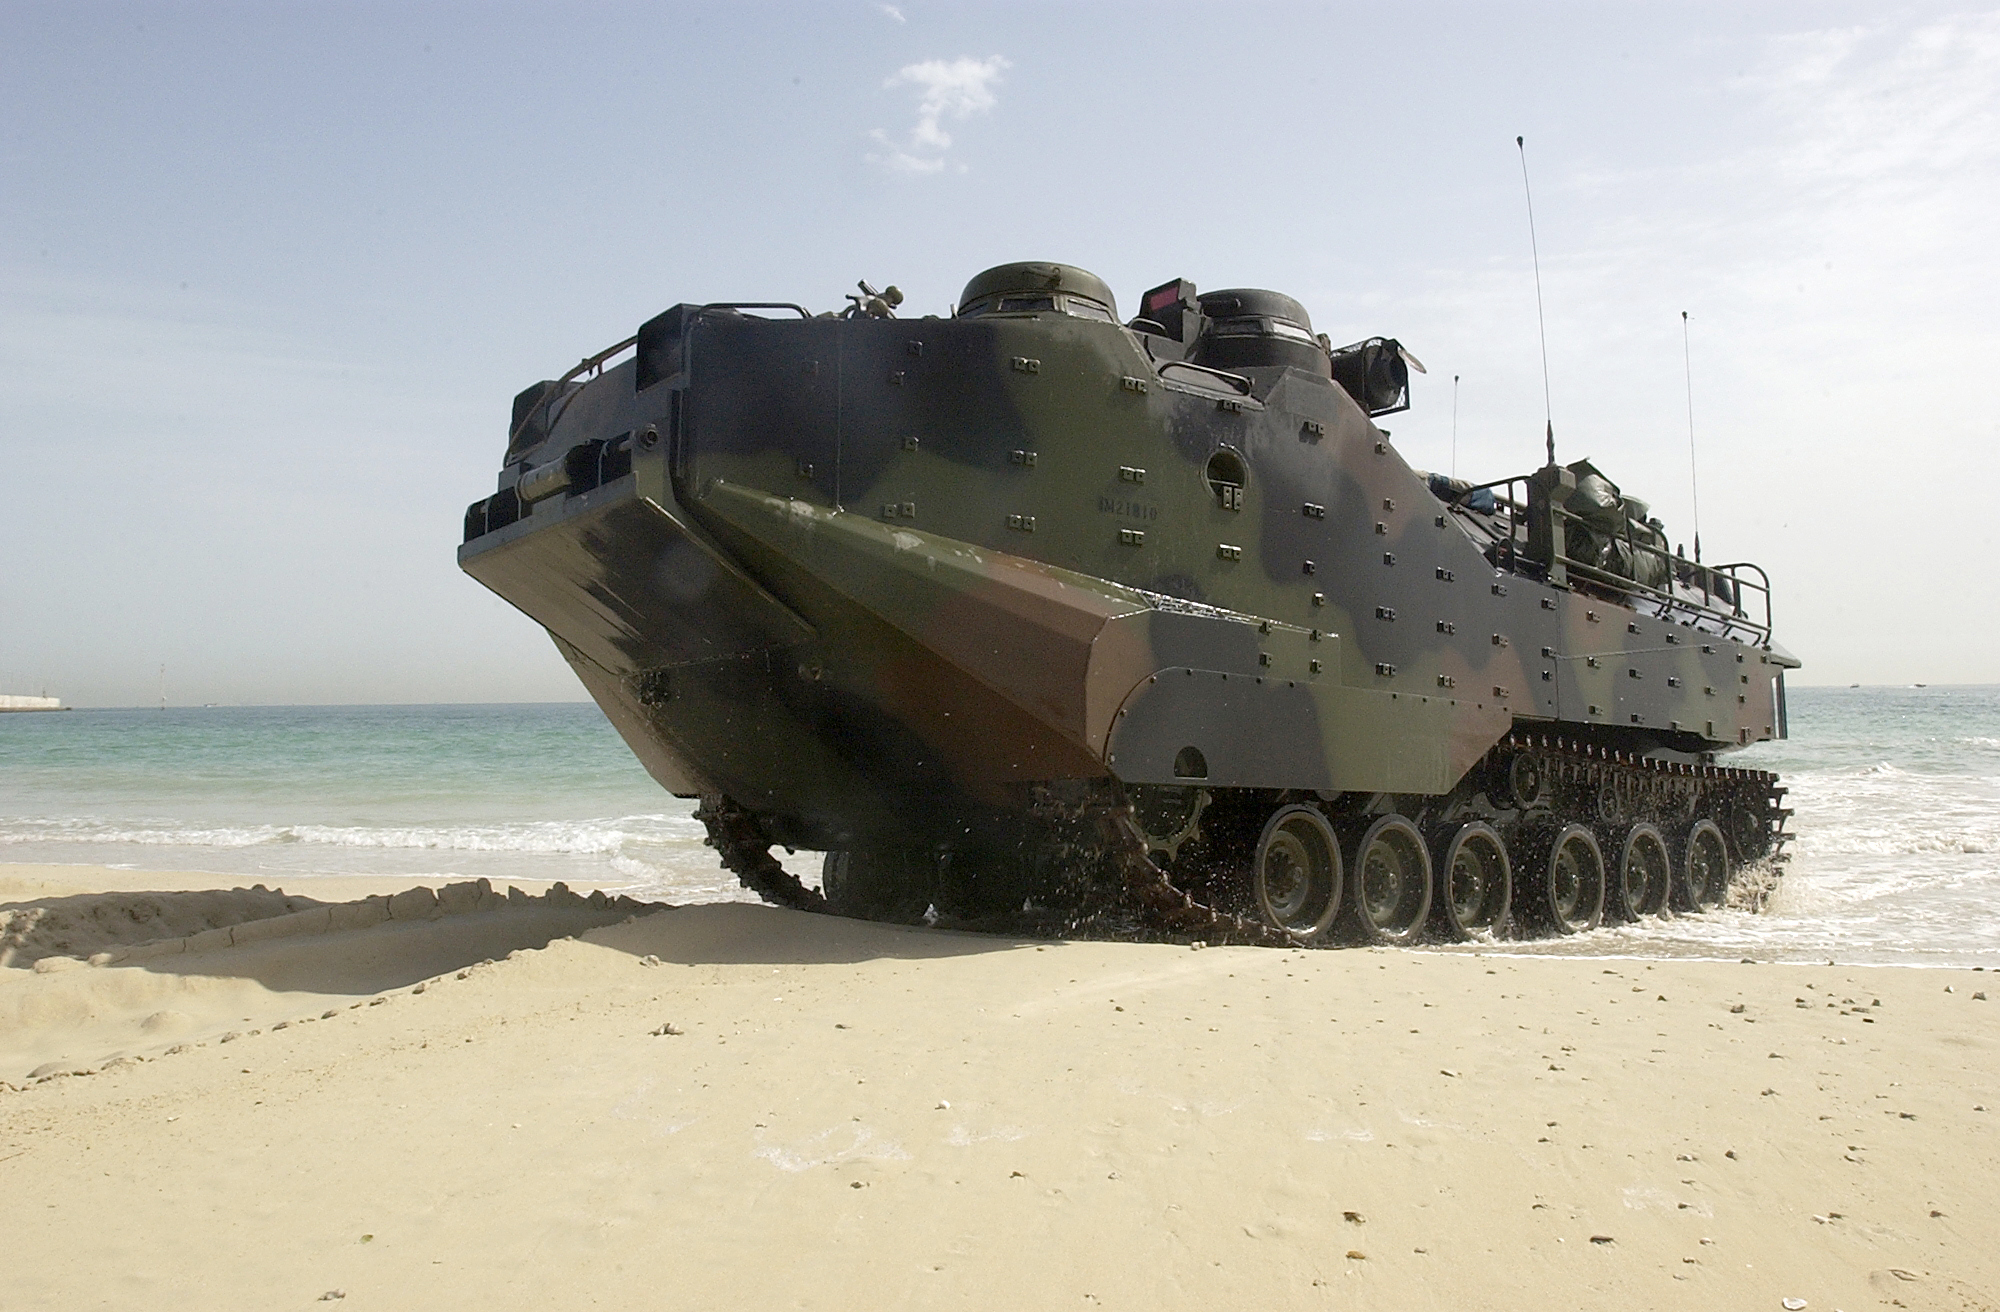 Amphibious Assault Vehicle Backgrounds, Compatible - PC, Mobile, Gadgets| 2000x1312 px